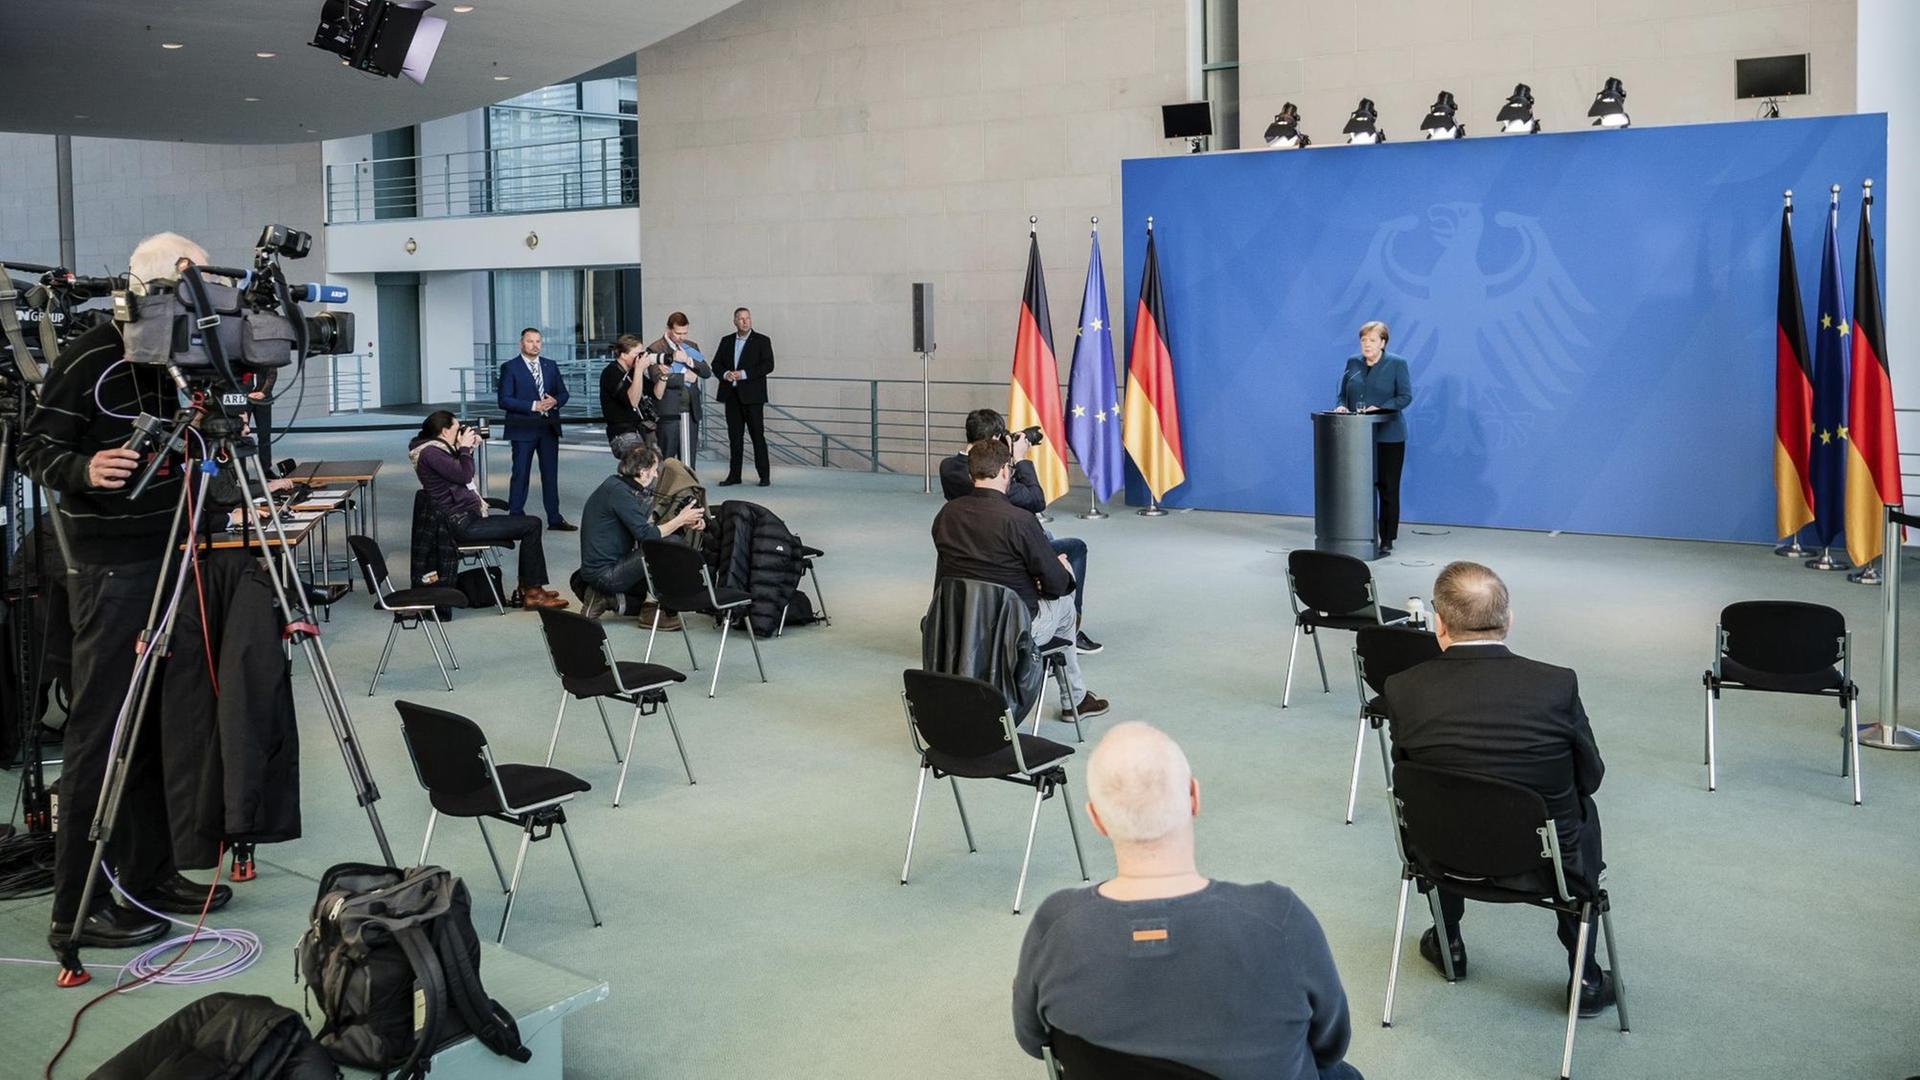 Bundeskanzlerin Merkel spricht auf einer Pressekonferenz zu Journalisten, die weit entfernt voneinander sitzen.